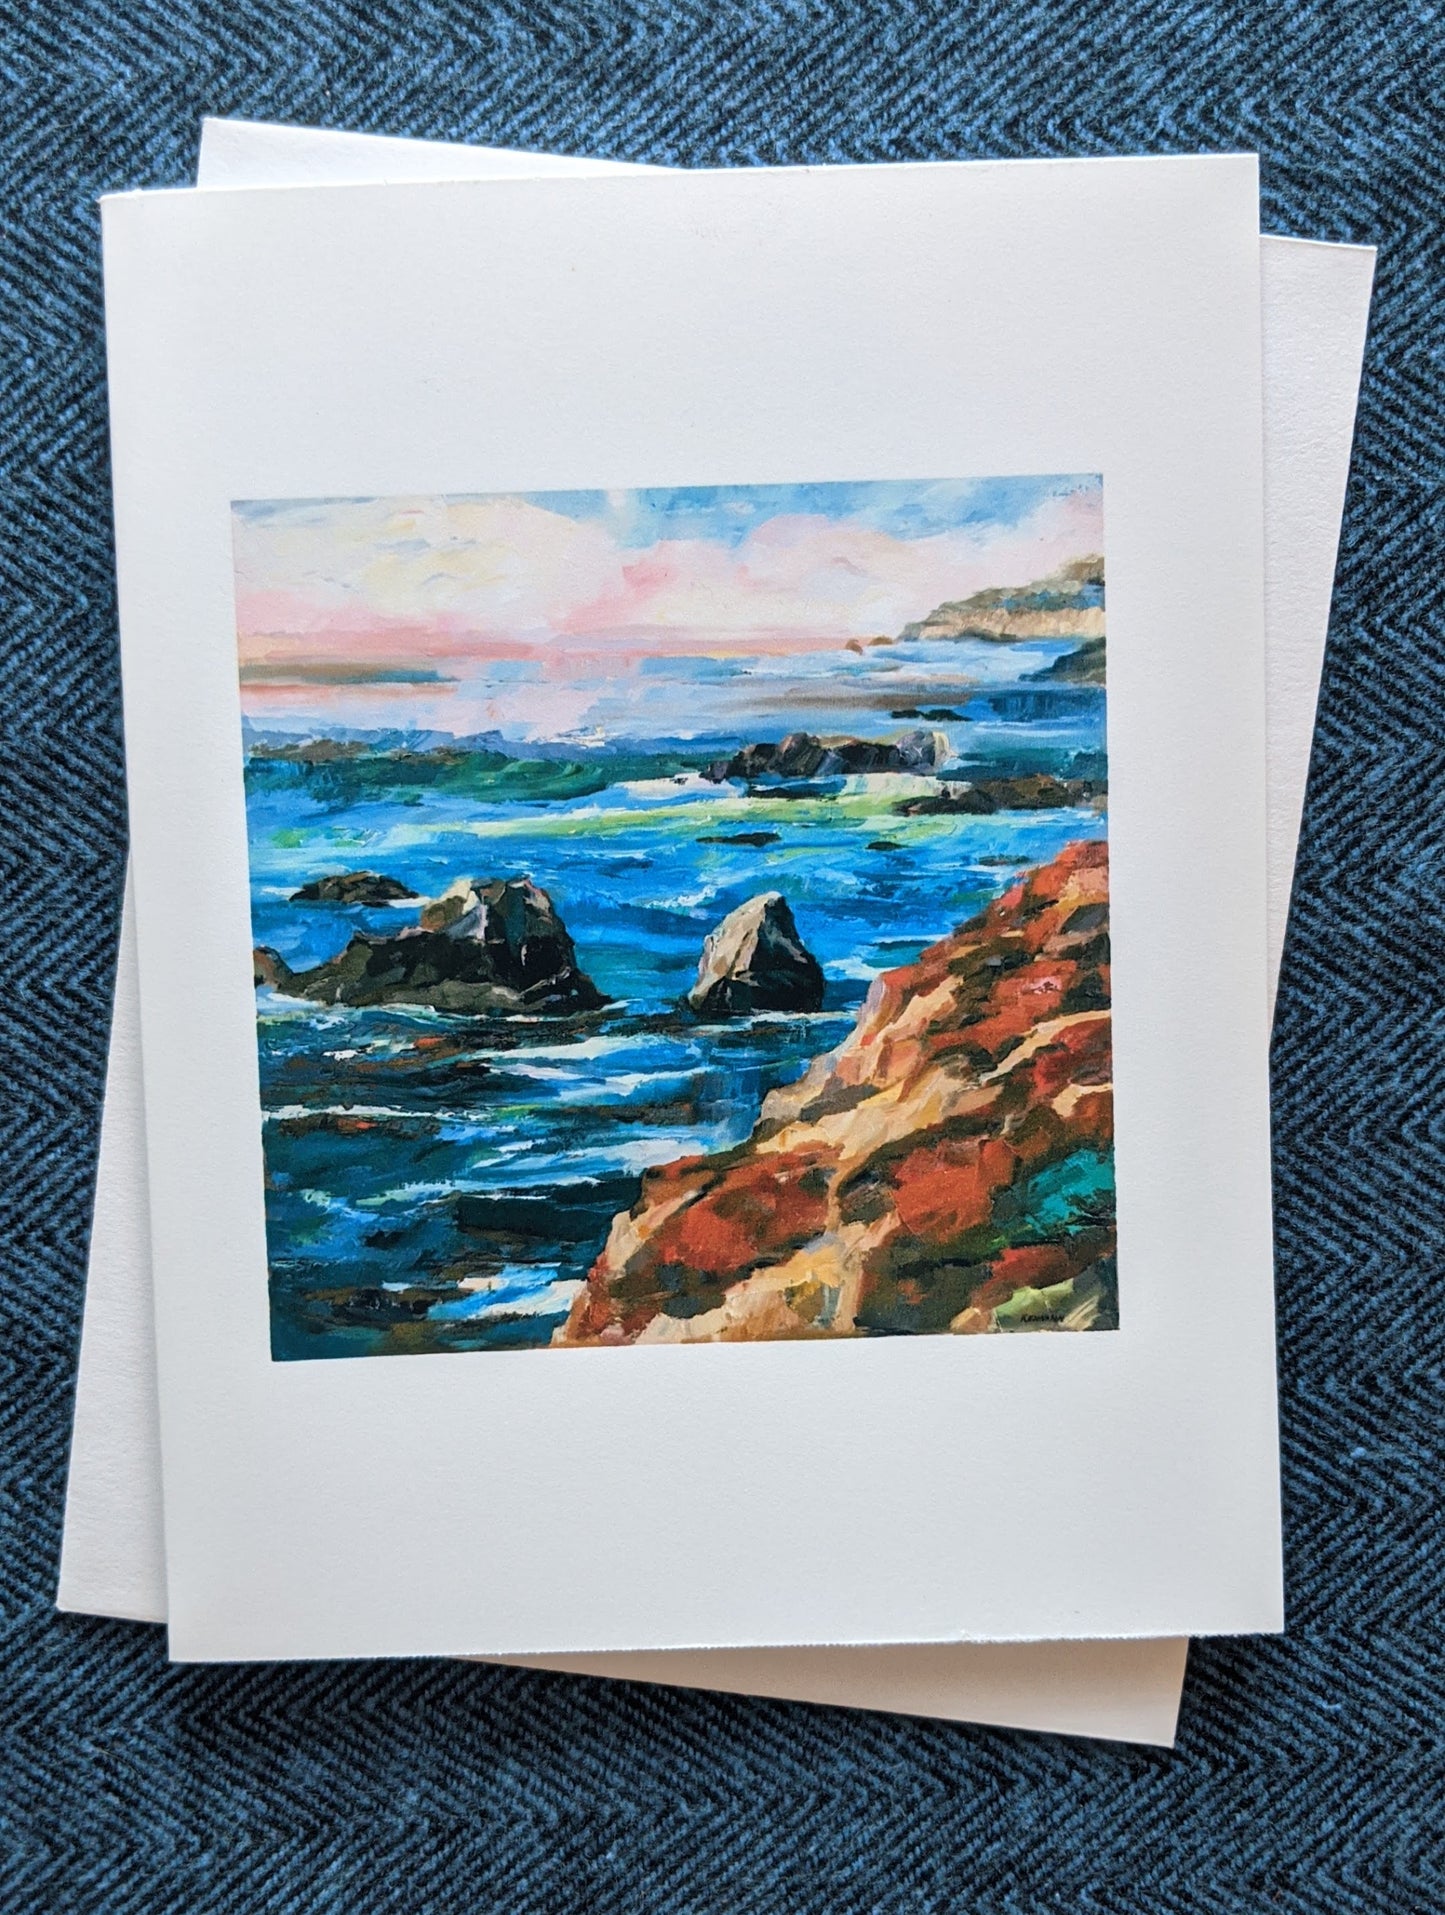 Local stationery with coastal cliffs by artist Bill Kennann